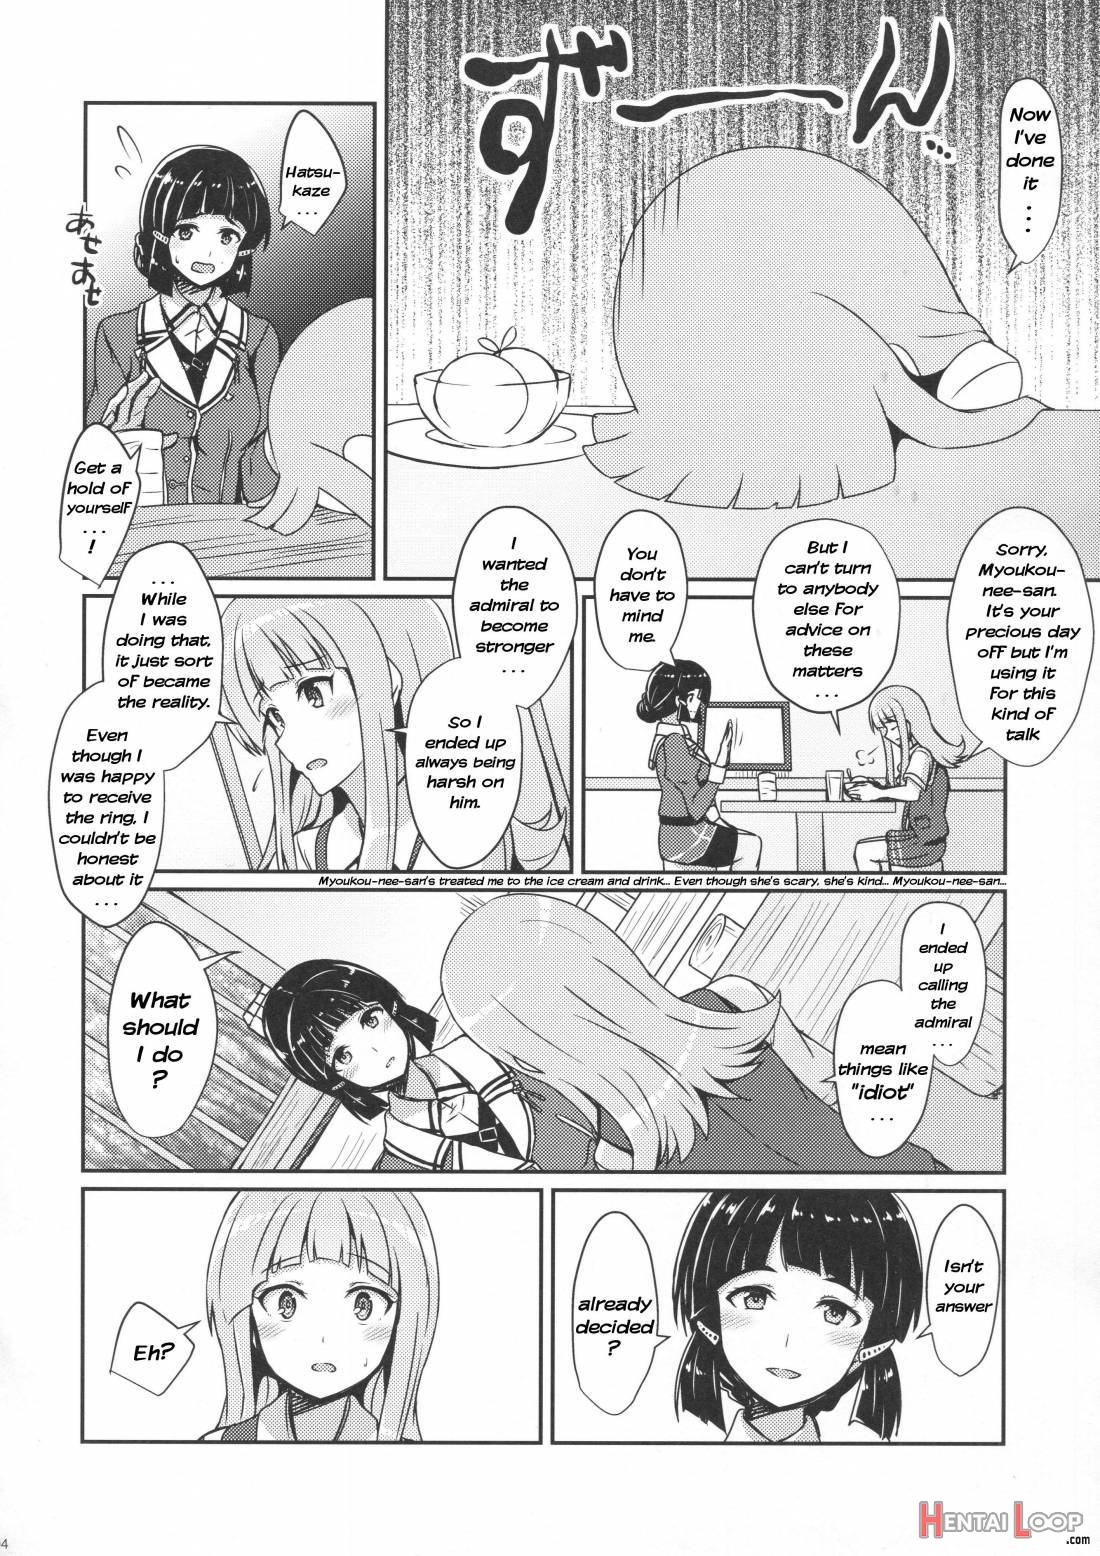 Hatsukaze no Kekkon Shoya page 3